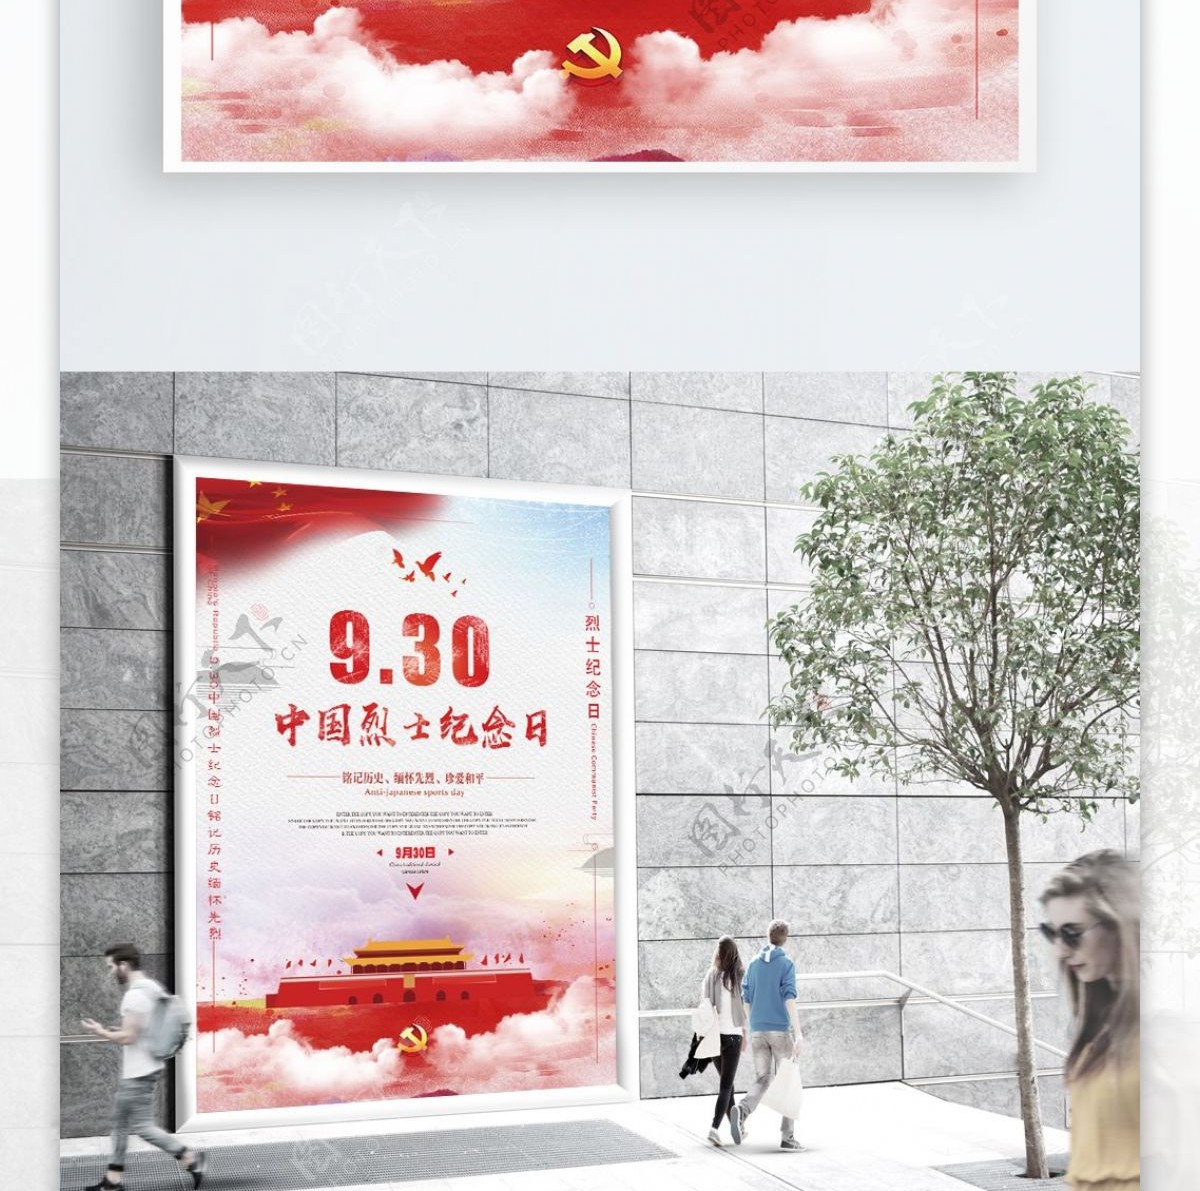 红色简约大气中国风中国烈士纪念日党建海报